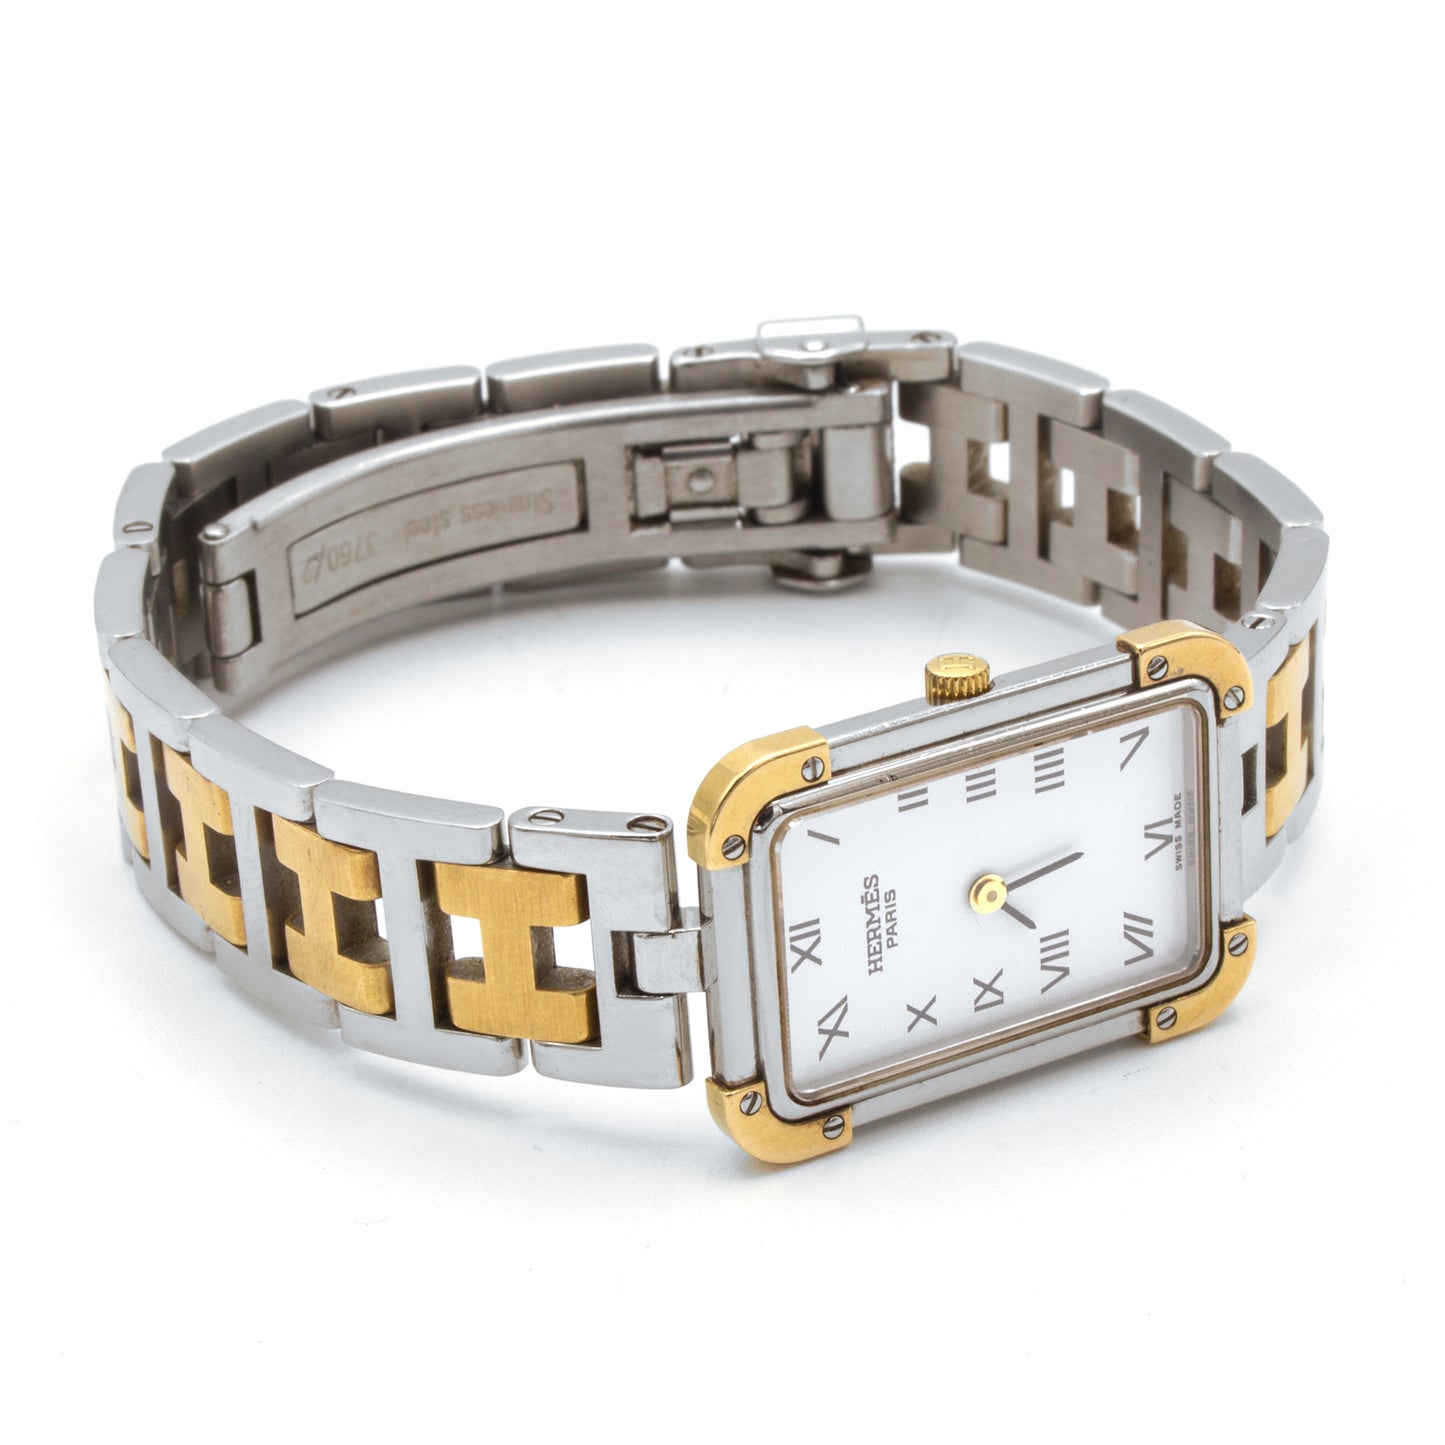 Hermès Croisière CR1.220 watch